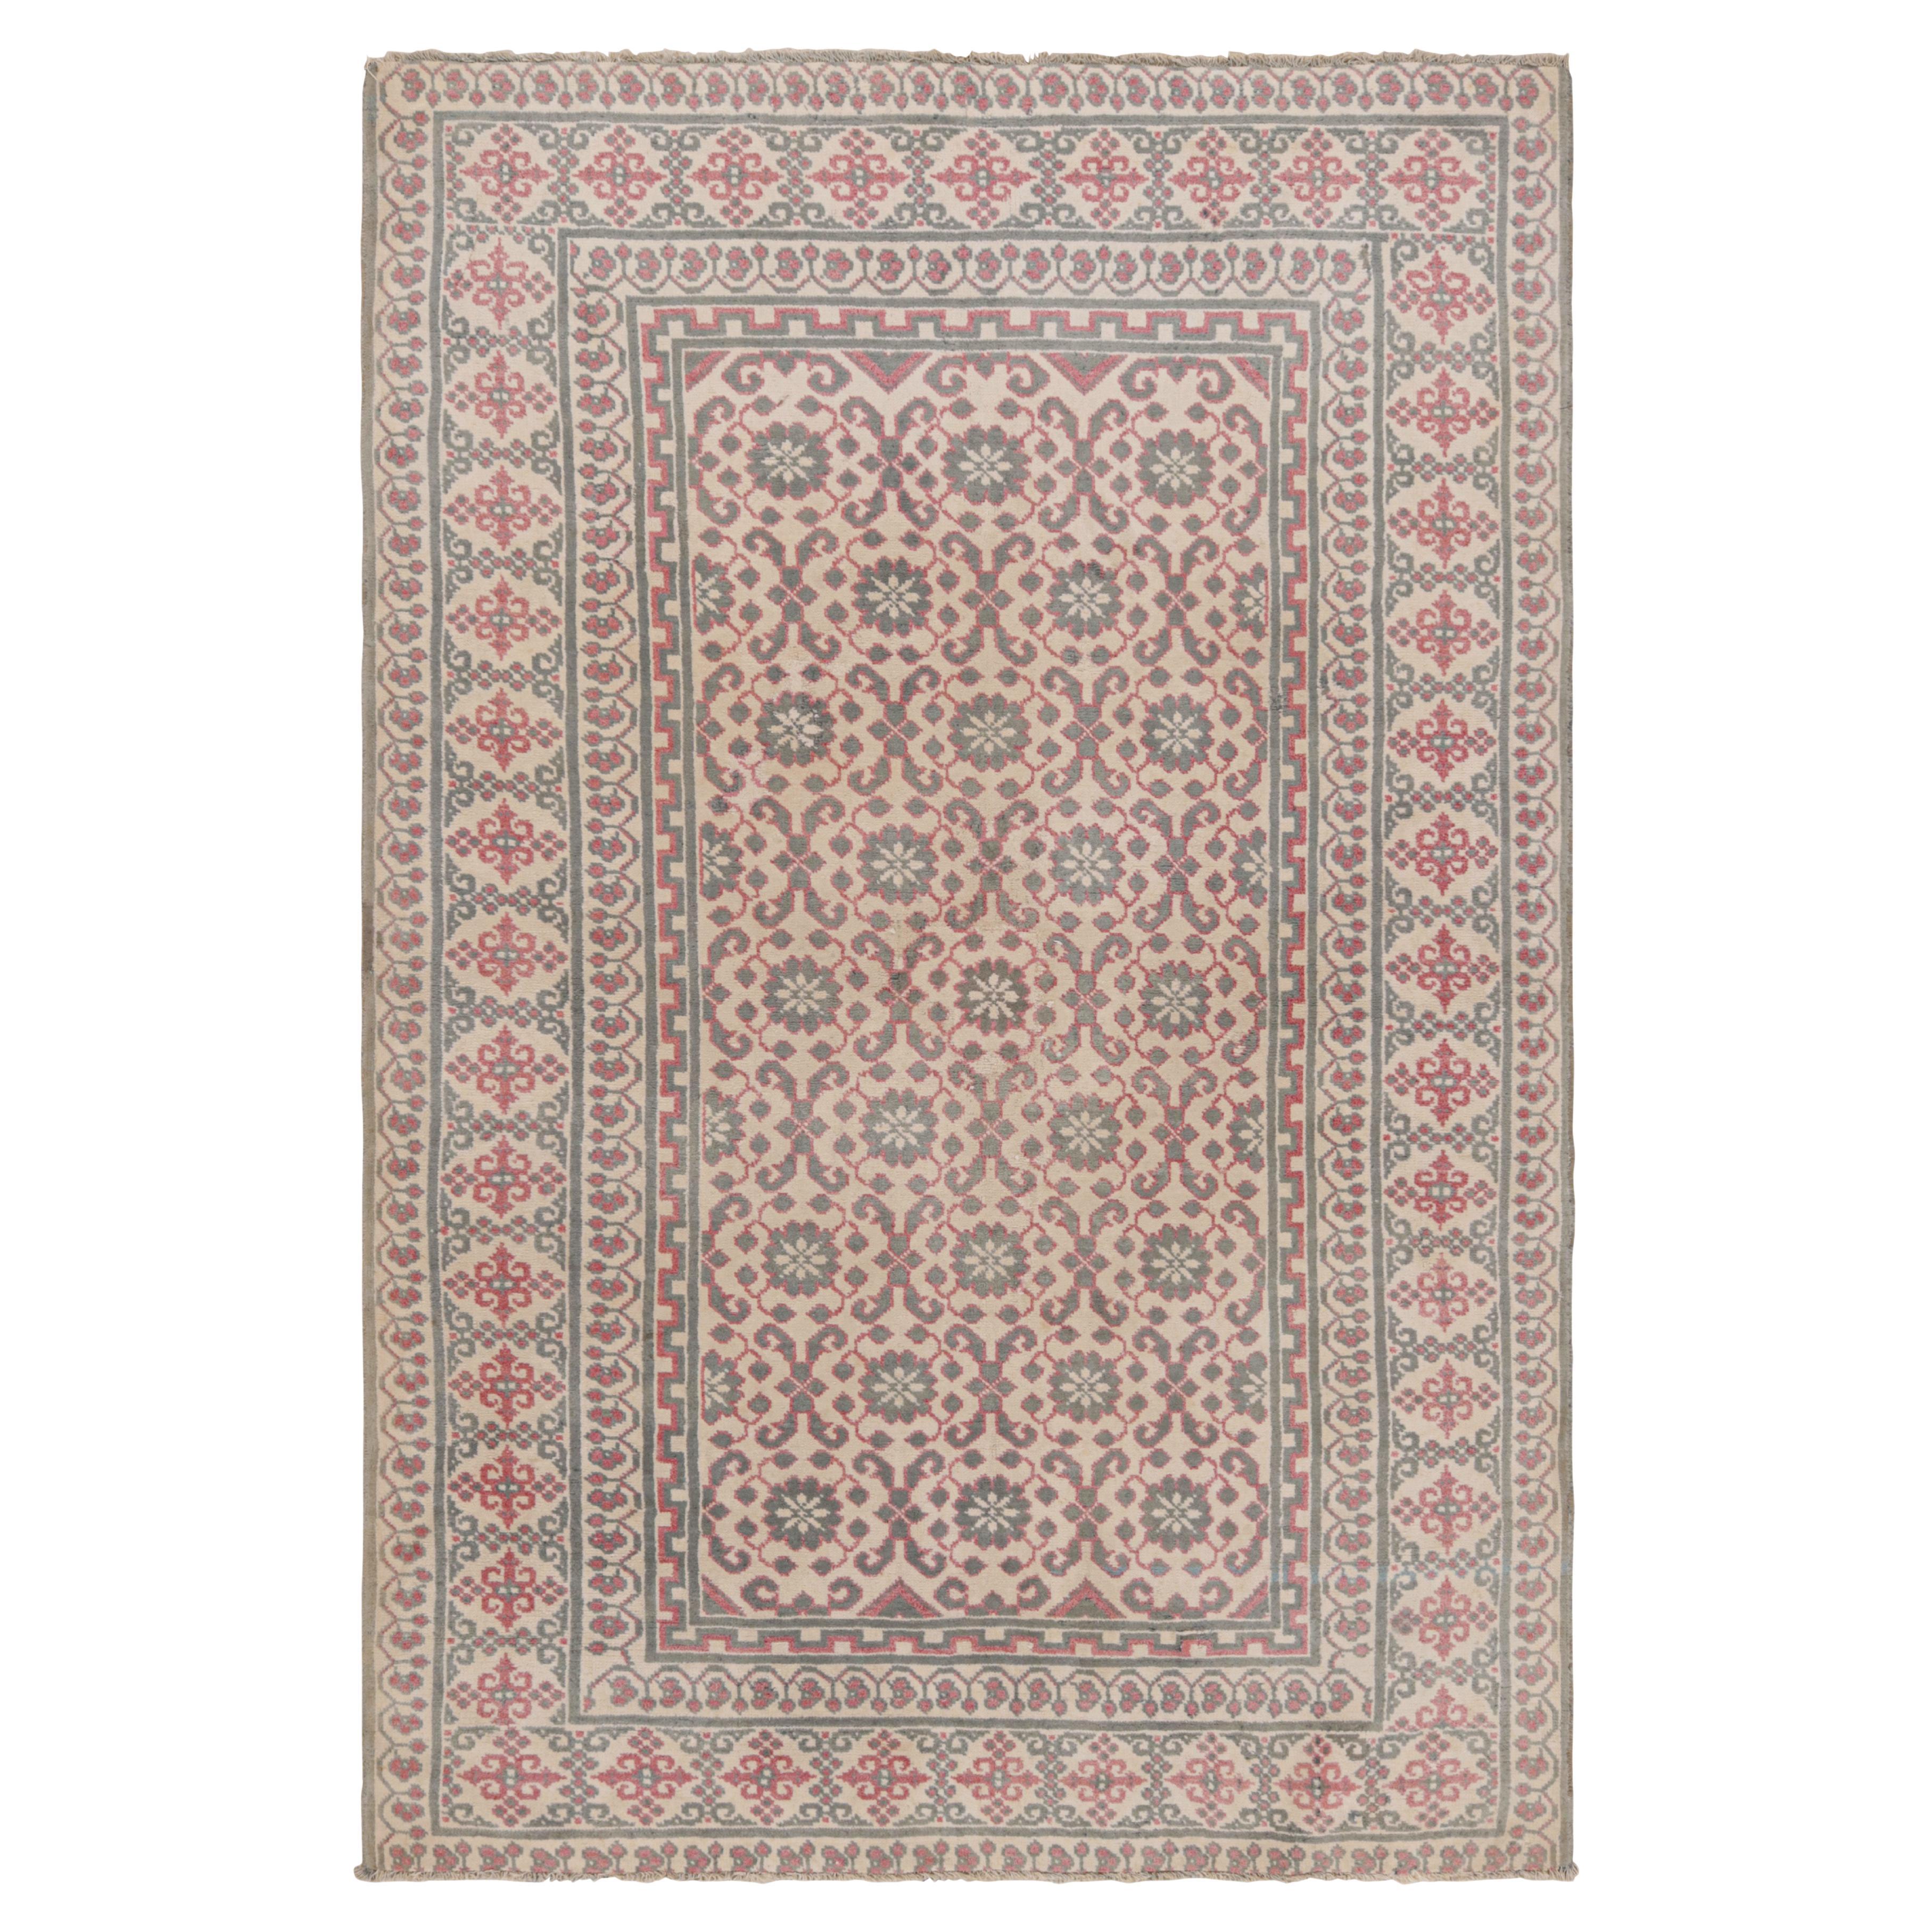 Antiker Agra-Teppich in Creme mit grauen und roten Blumenmustern, von Rug & Kilim